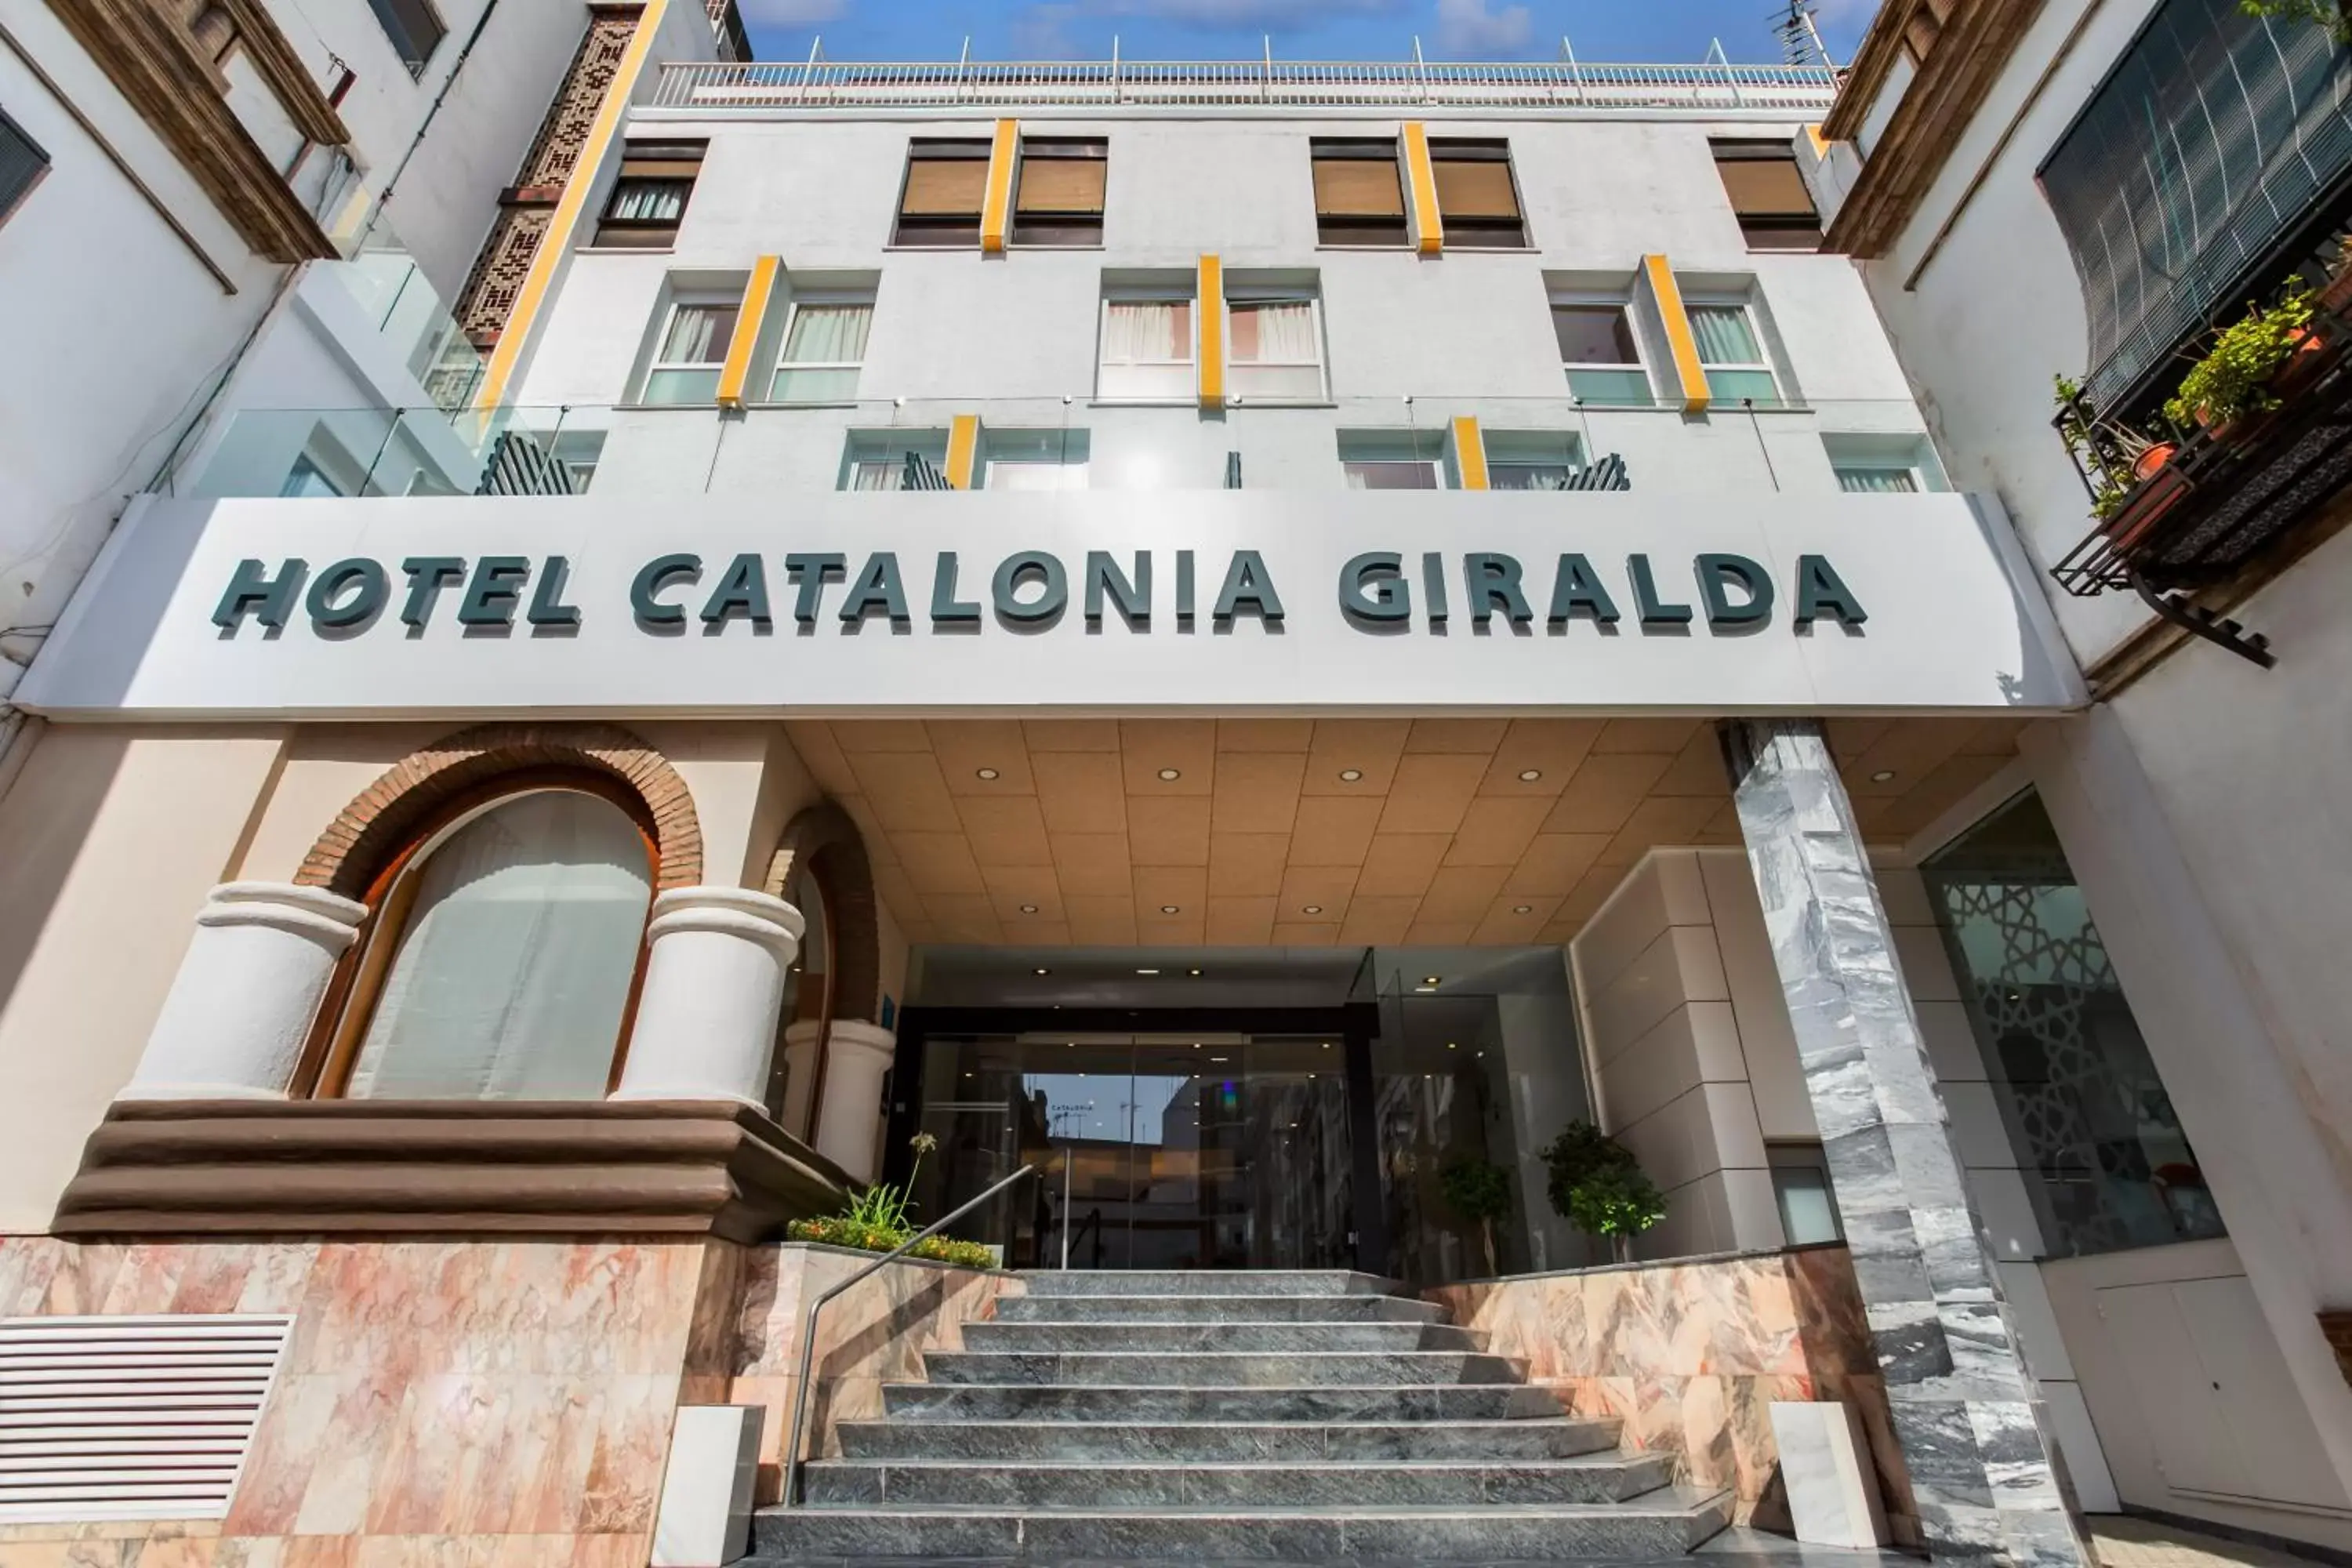 Facade/entrance in Catalonia Giralda